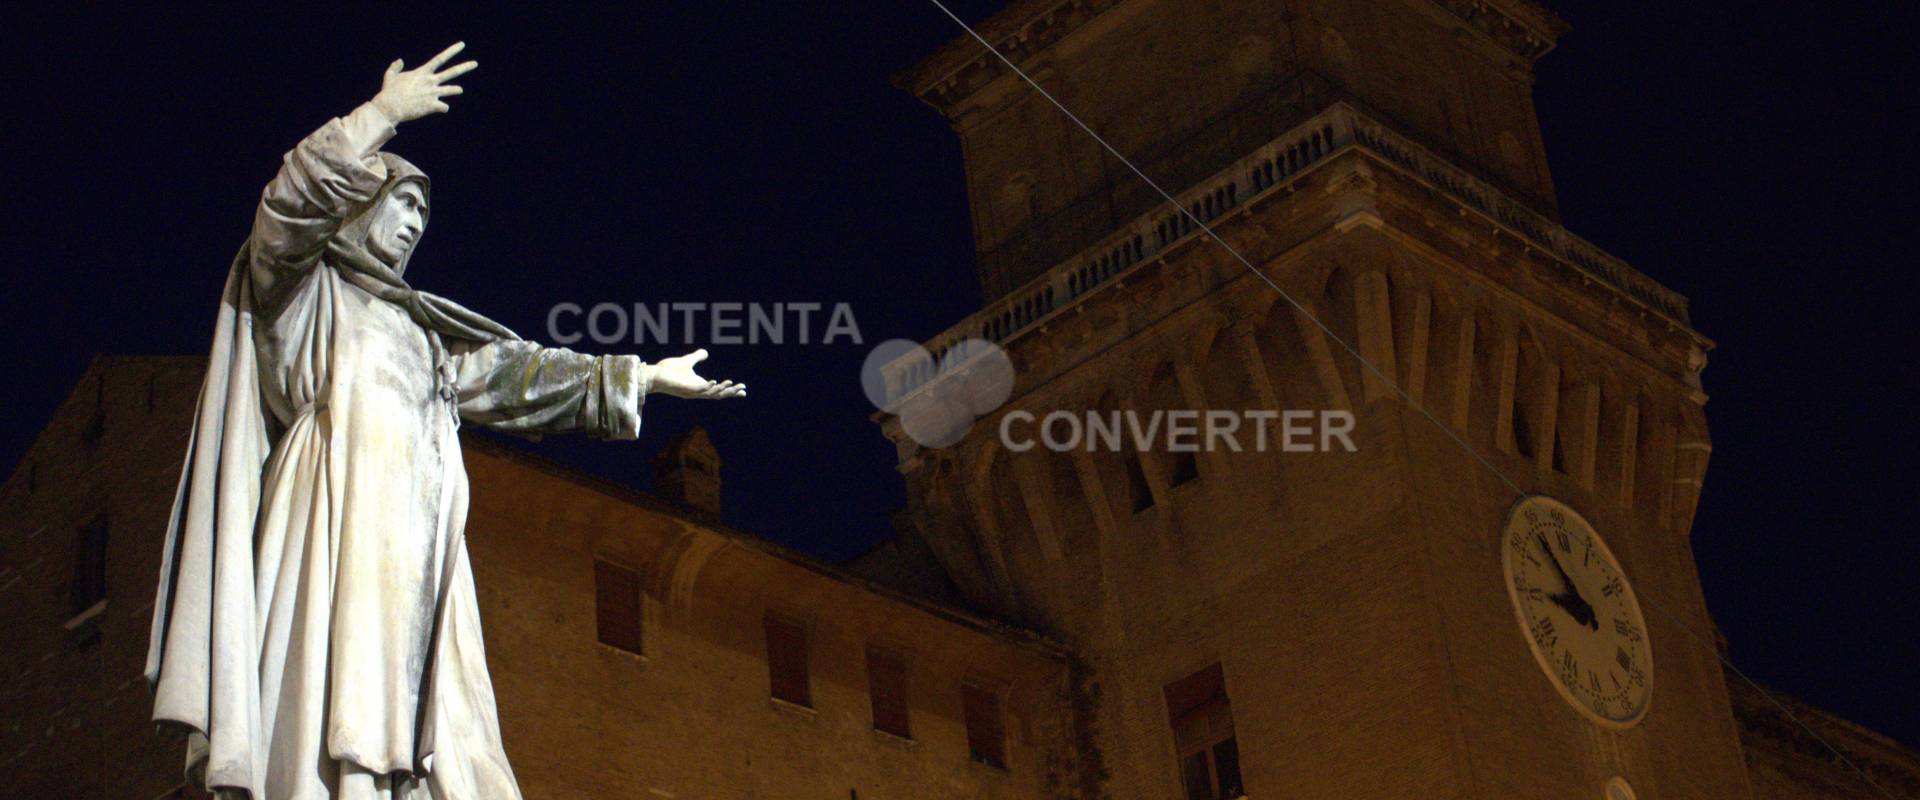 Il castello Estense presentato da Savonarola foto di Leonardo Roncarati